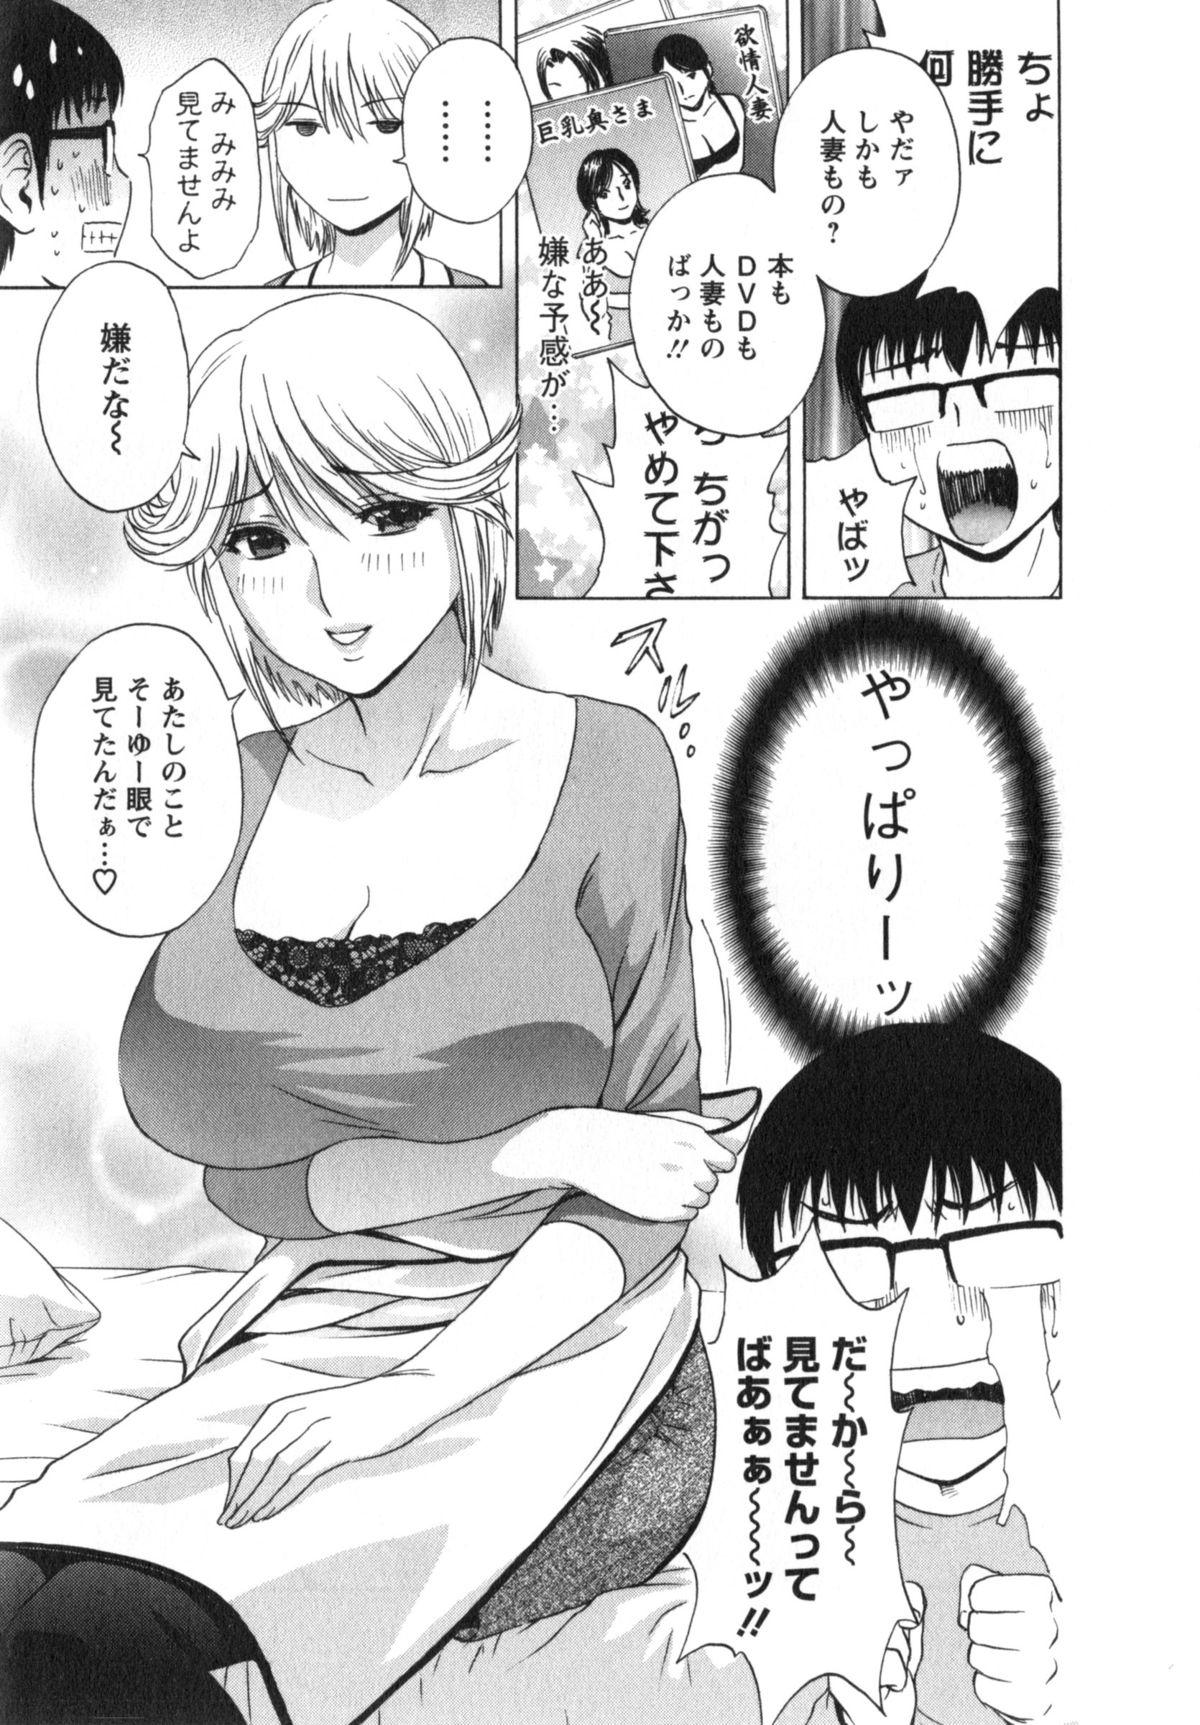 Manga no youna Hitozuma to no Hibi - Days with Married Women such as Comics. 29